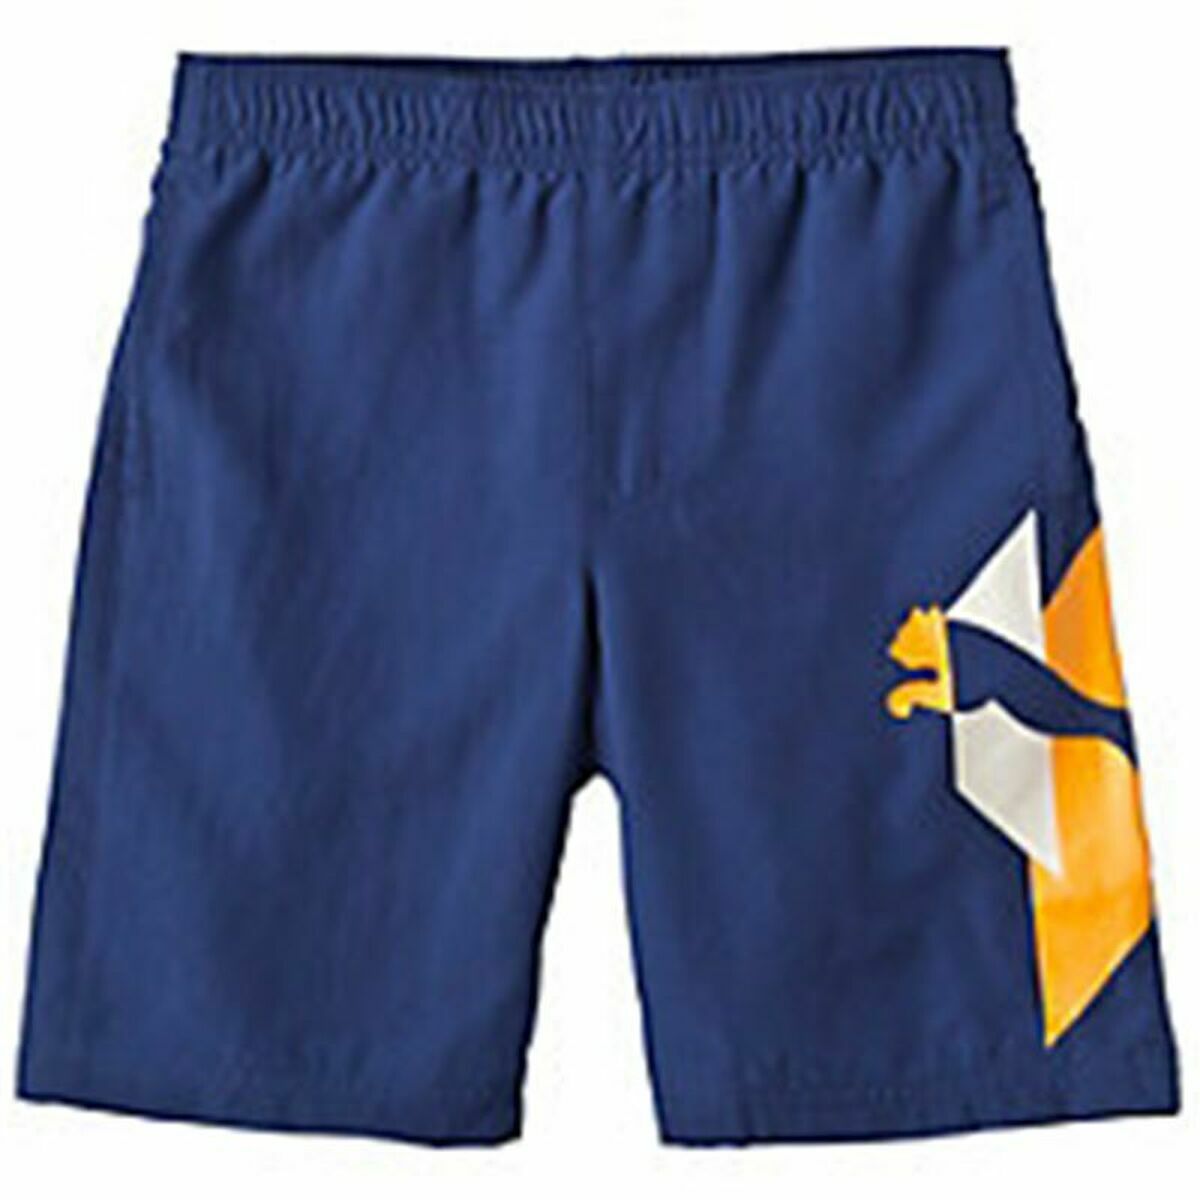 Pantalones Cortos Deportivos para Niños Puma TD Wove Azul